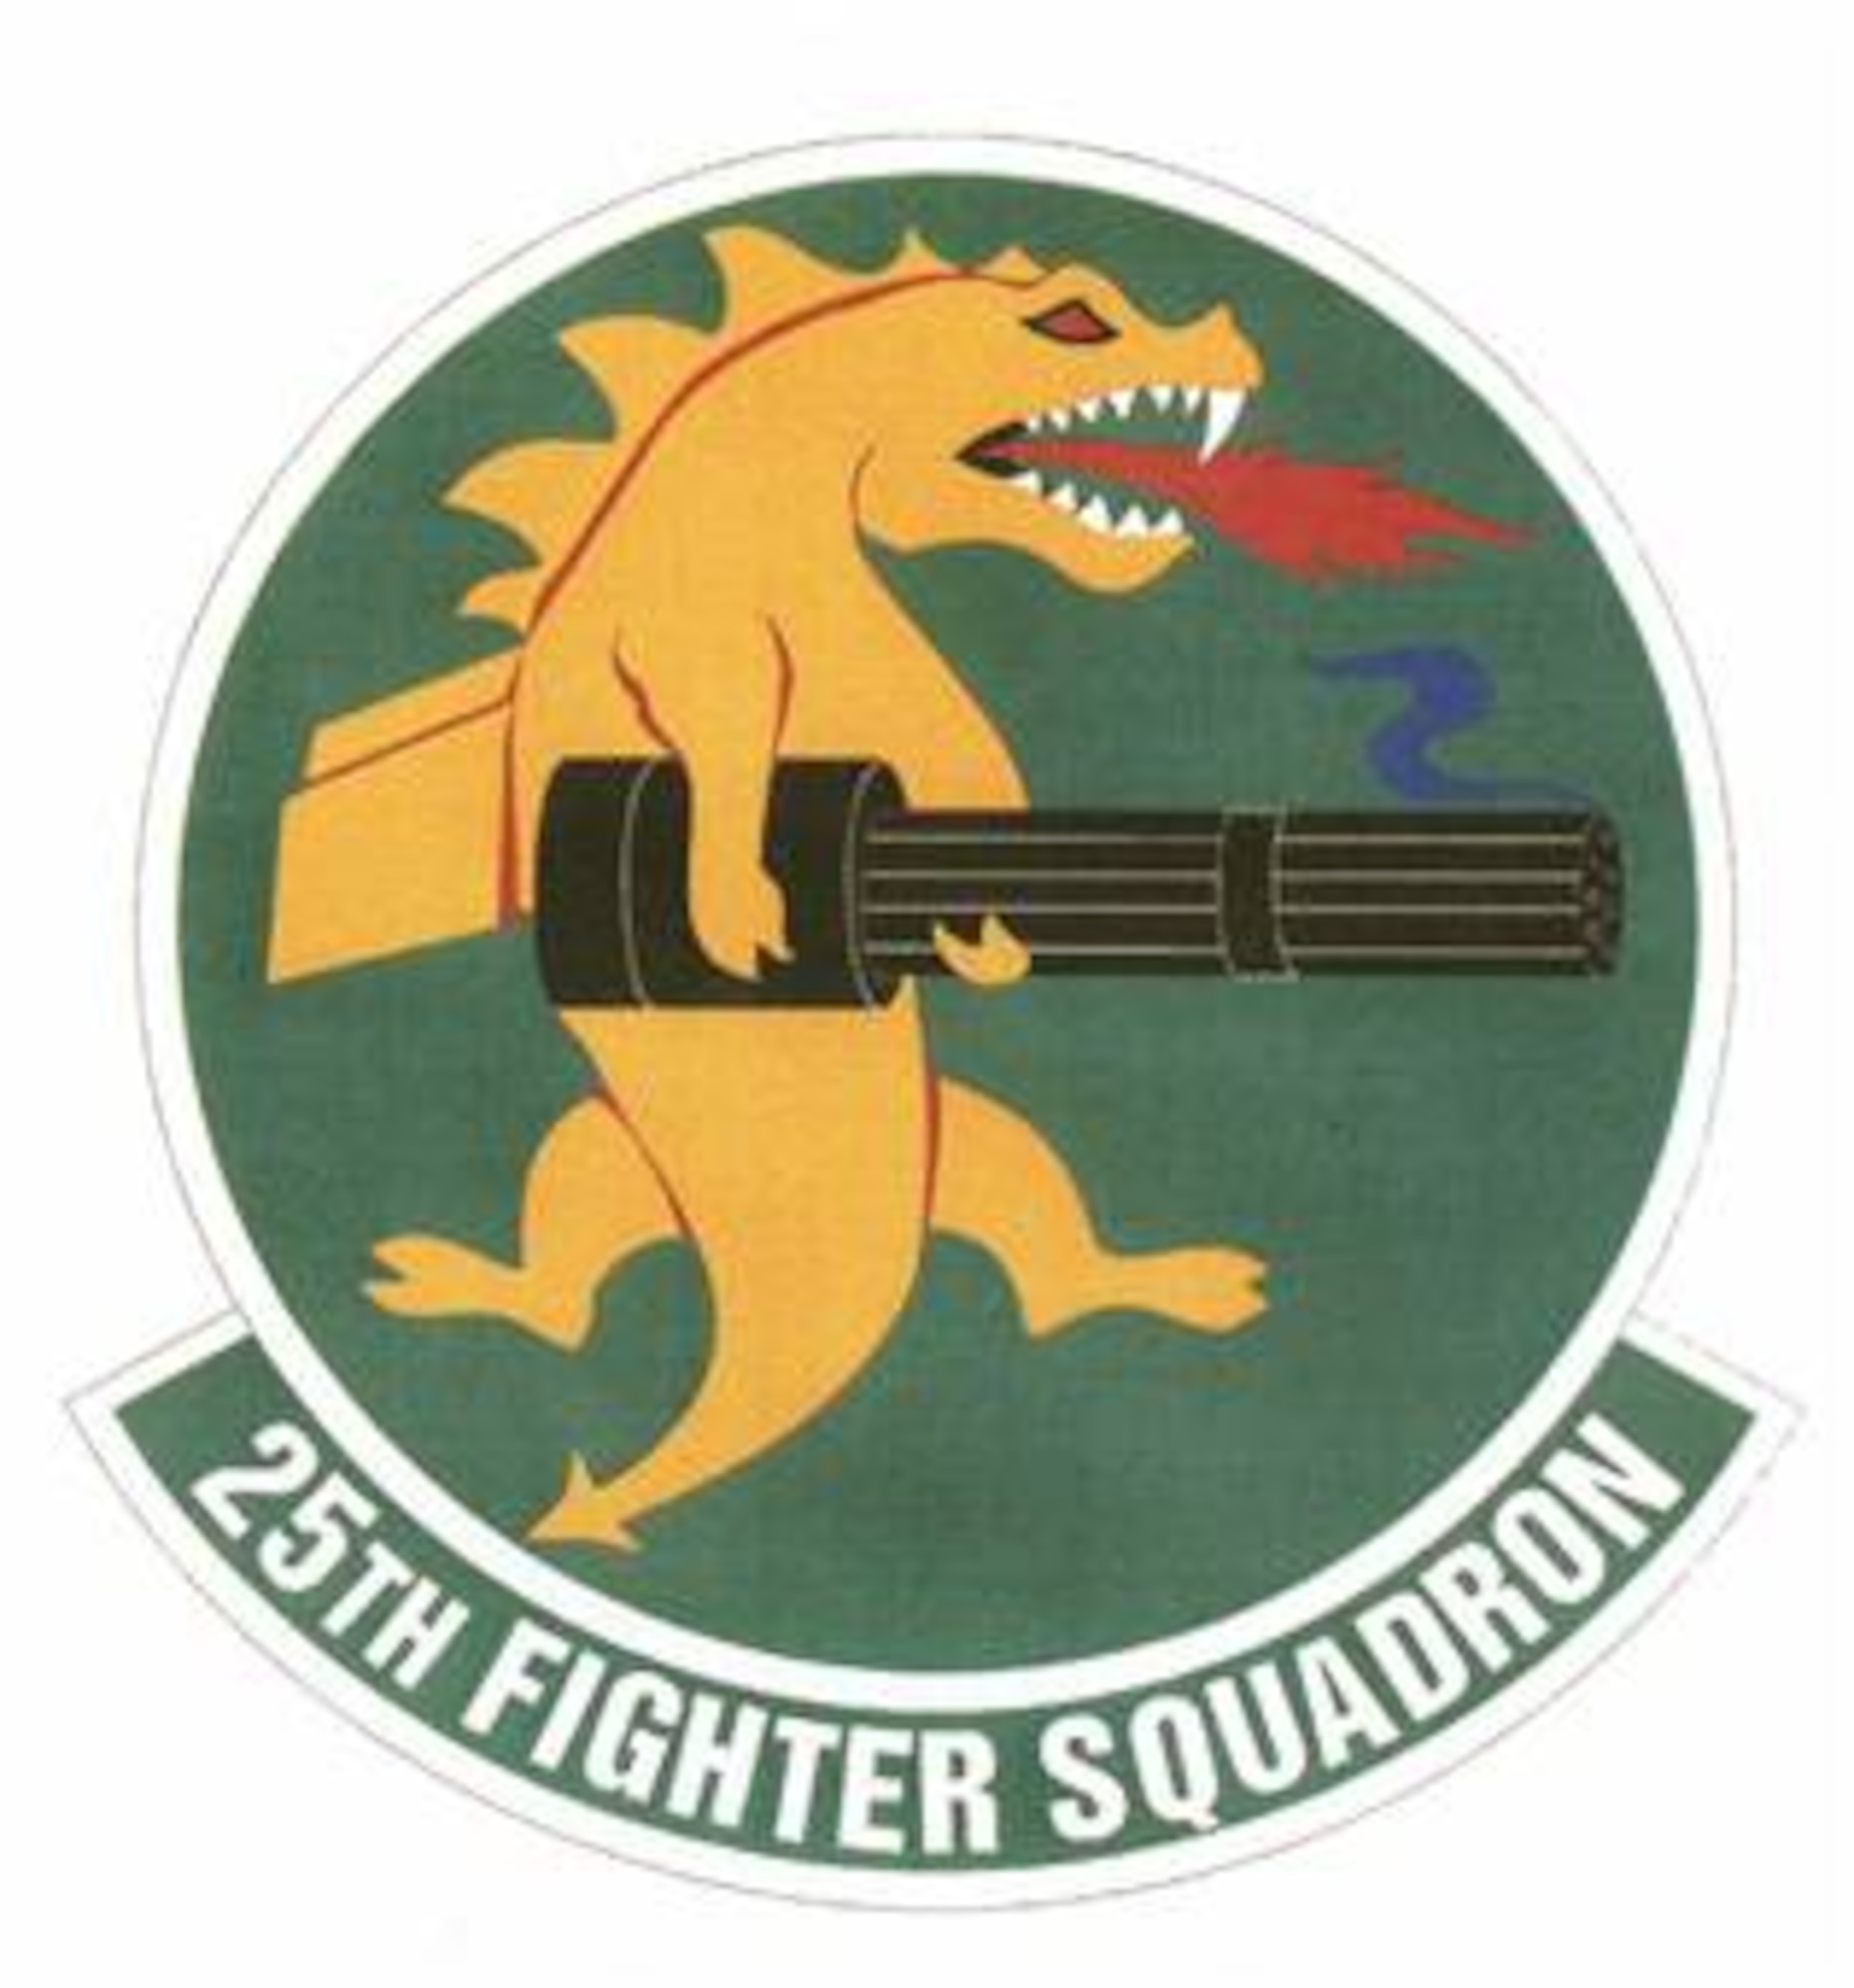 25th FS emblem